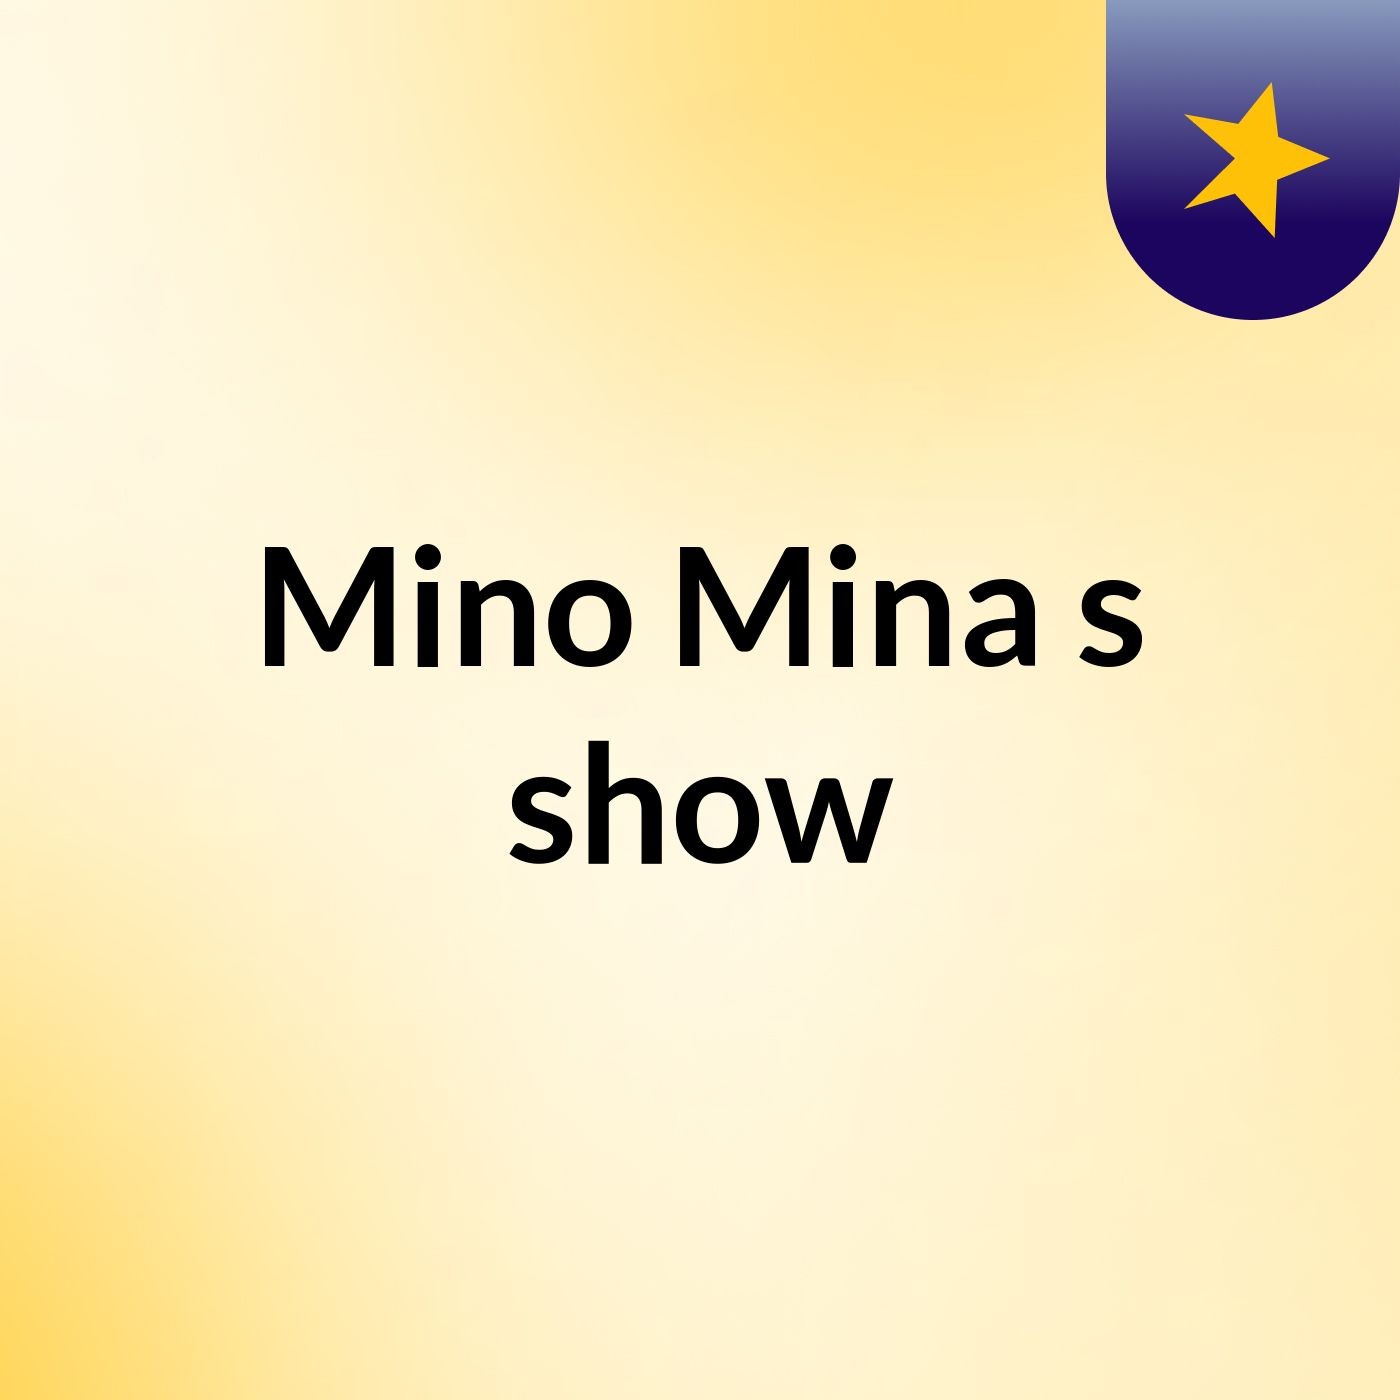 Mino Mina's show